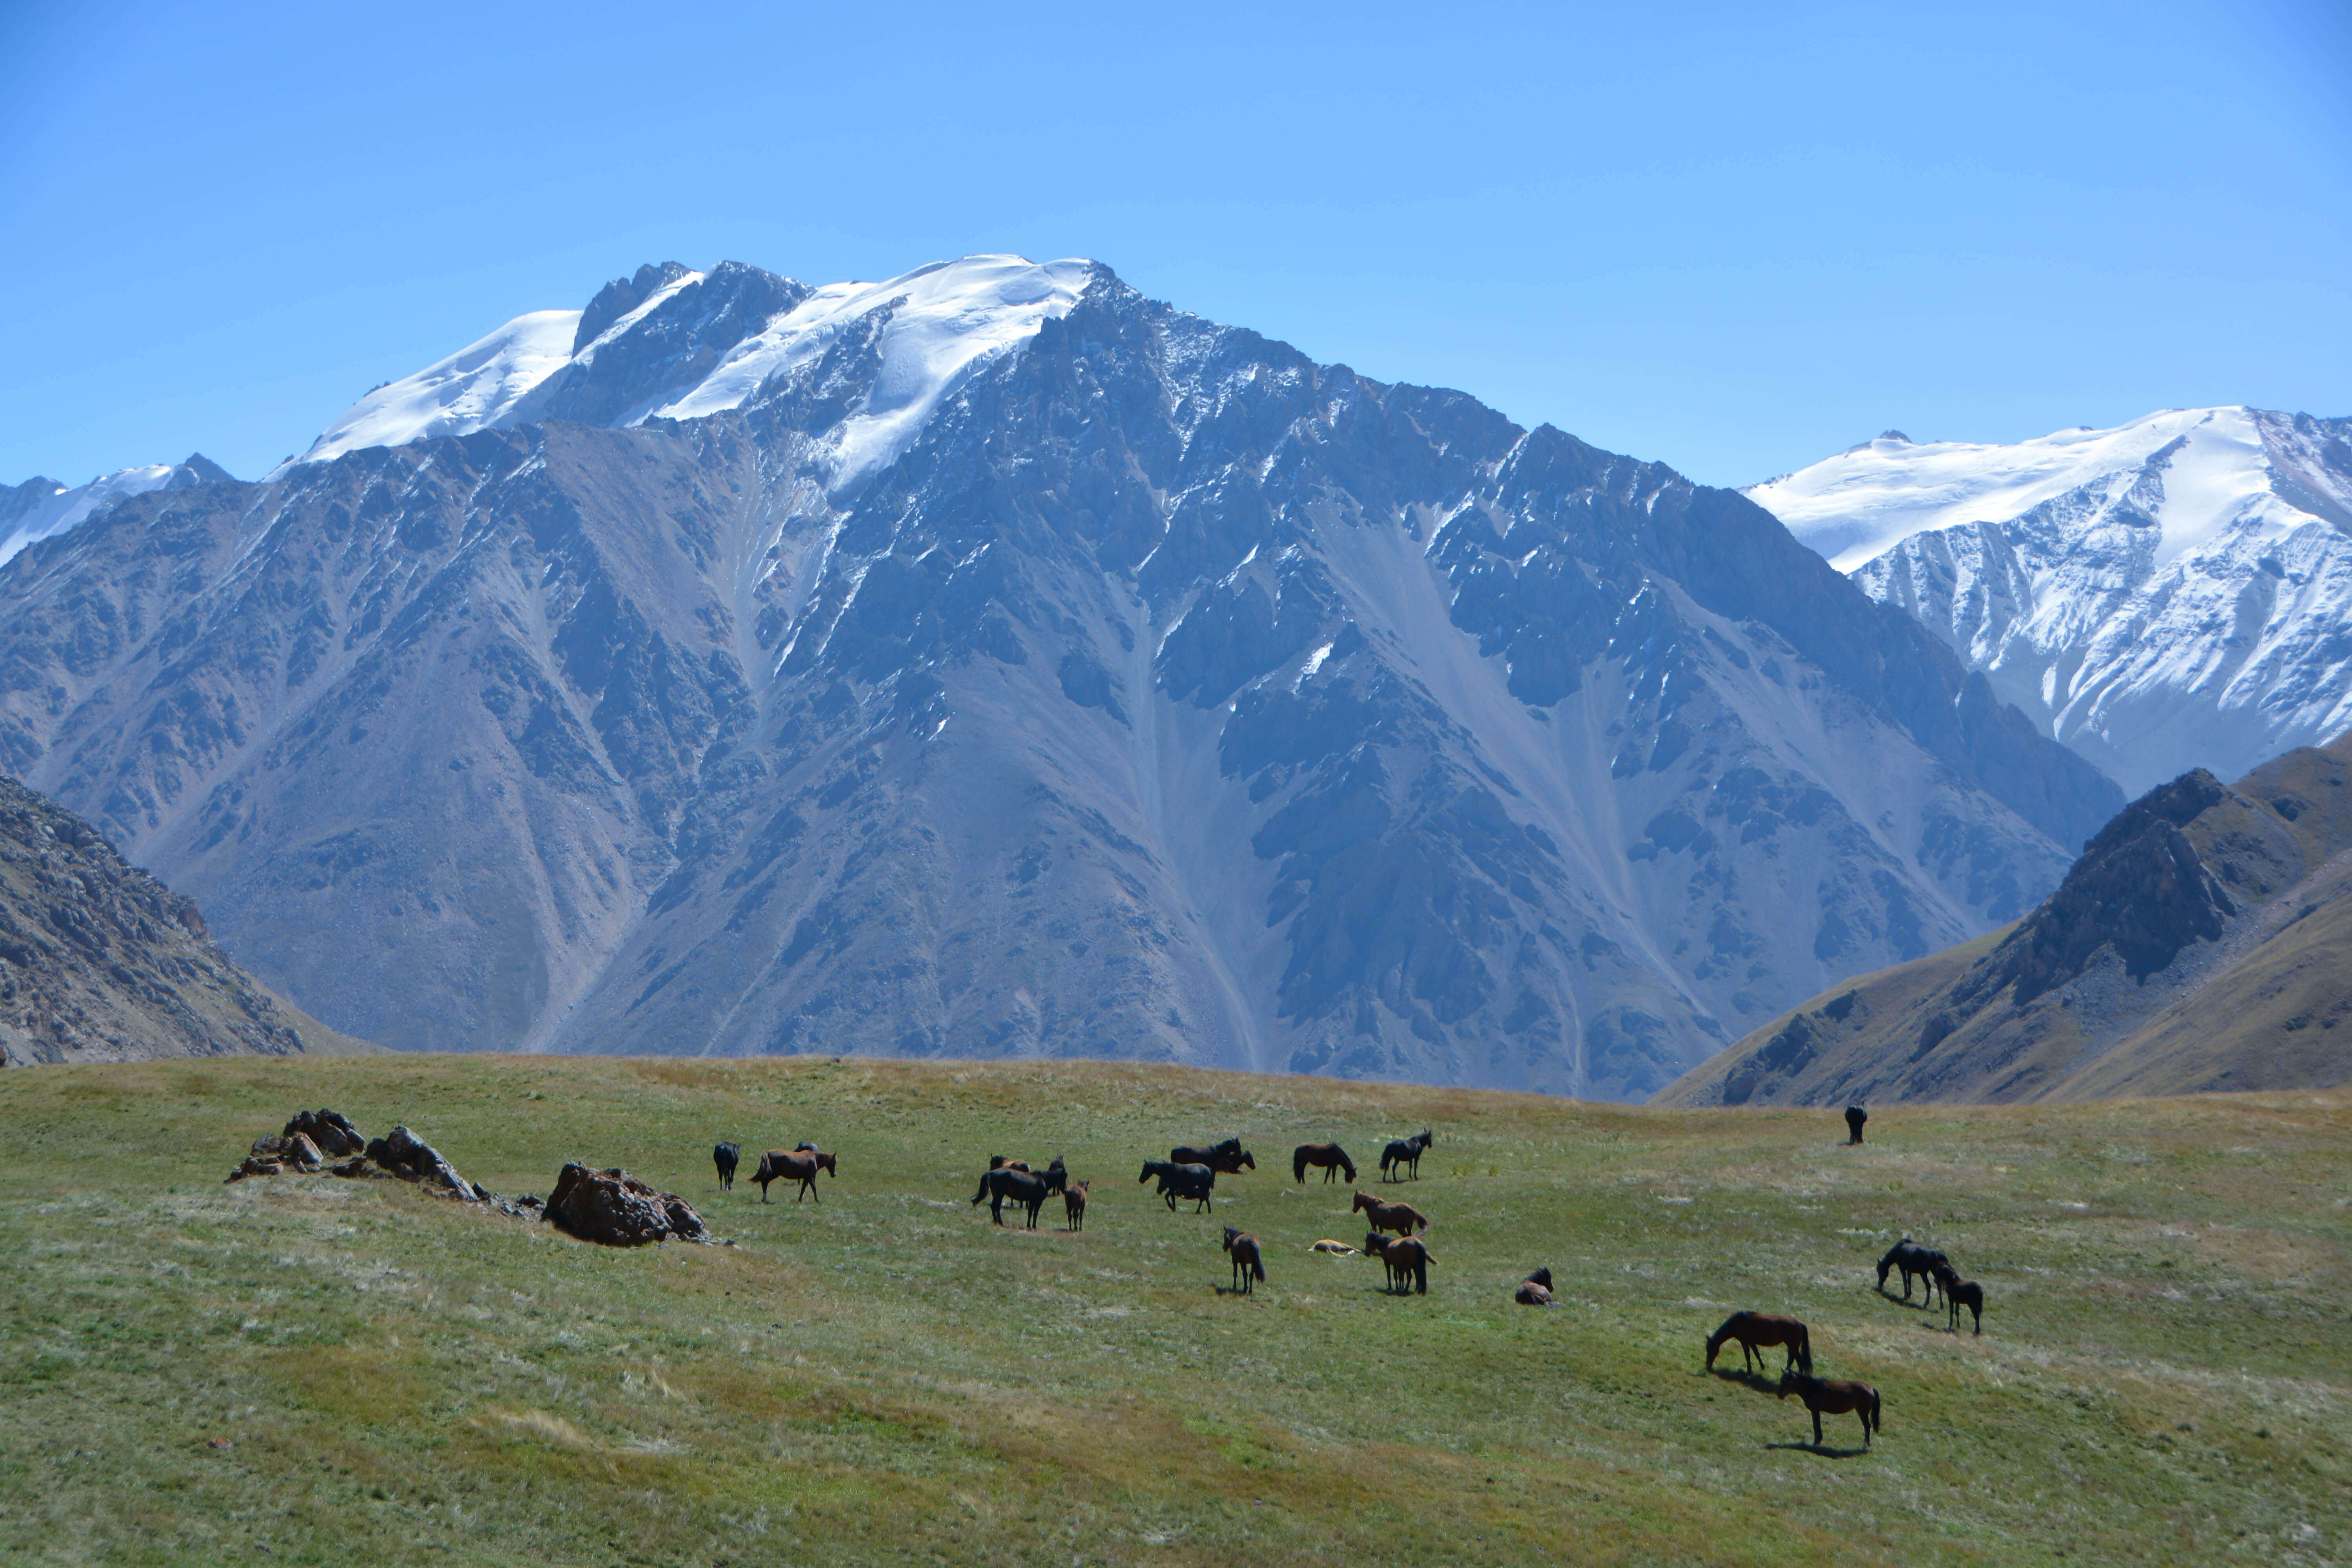 trek kirghizistan, vtt kirghizistan, trekking kirghizistan, ski kirghizistan, monts célestes kirghizistan, trek kirghizie, séjour kirghizistan, velo kirghizistan, ski de randonnée kirghizistan, trek au kirghizistan, trekking kirghizie, rando à cheval kirghizistan, trek à cheval kirghizistan, randonnée kirghizistan, kirghizistan à vélo, vtt ouzbékistan, voyage ouzbékistan, randonnée tadjikistan, kirghizistan trek, randonnée asie centrale, les monts célestes, voyage au kirghizistan, voyage kirghizie, voyage kirghizistan, kirghizistan voyage, agence de voyage kirghizistan, agence de trek kirghizistan